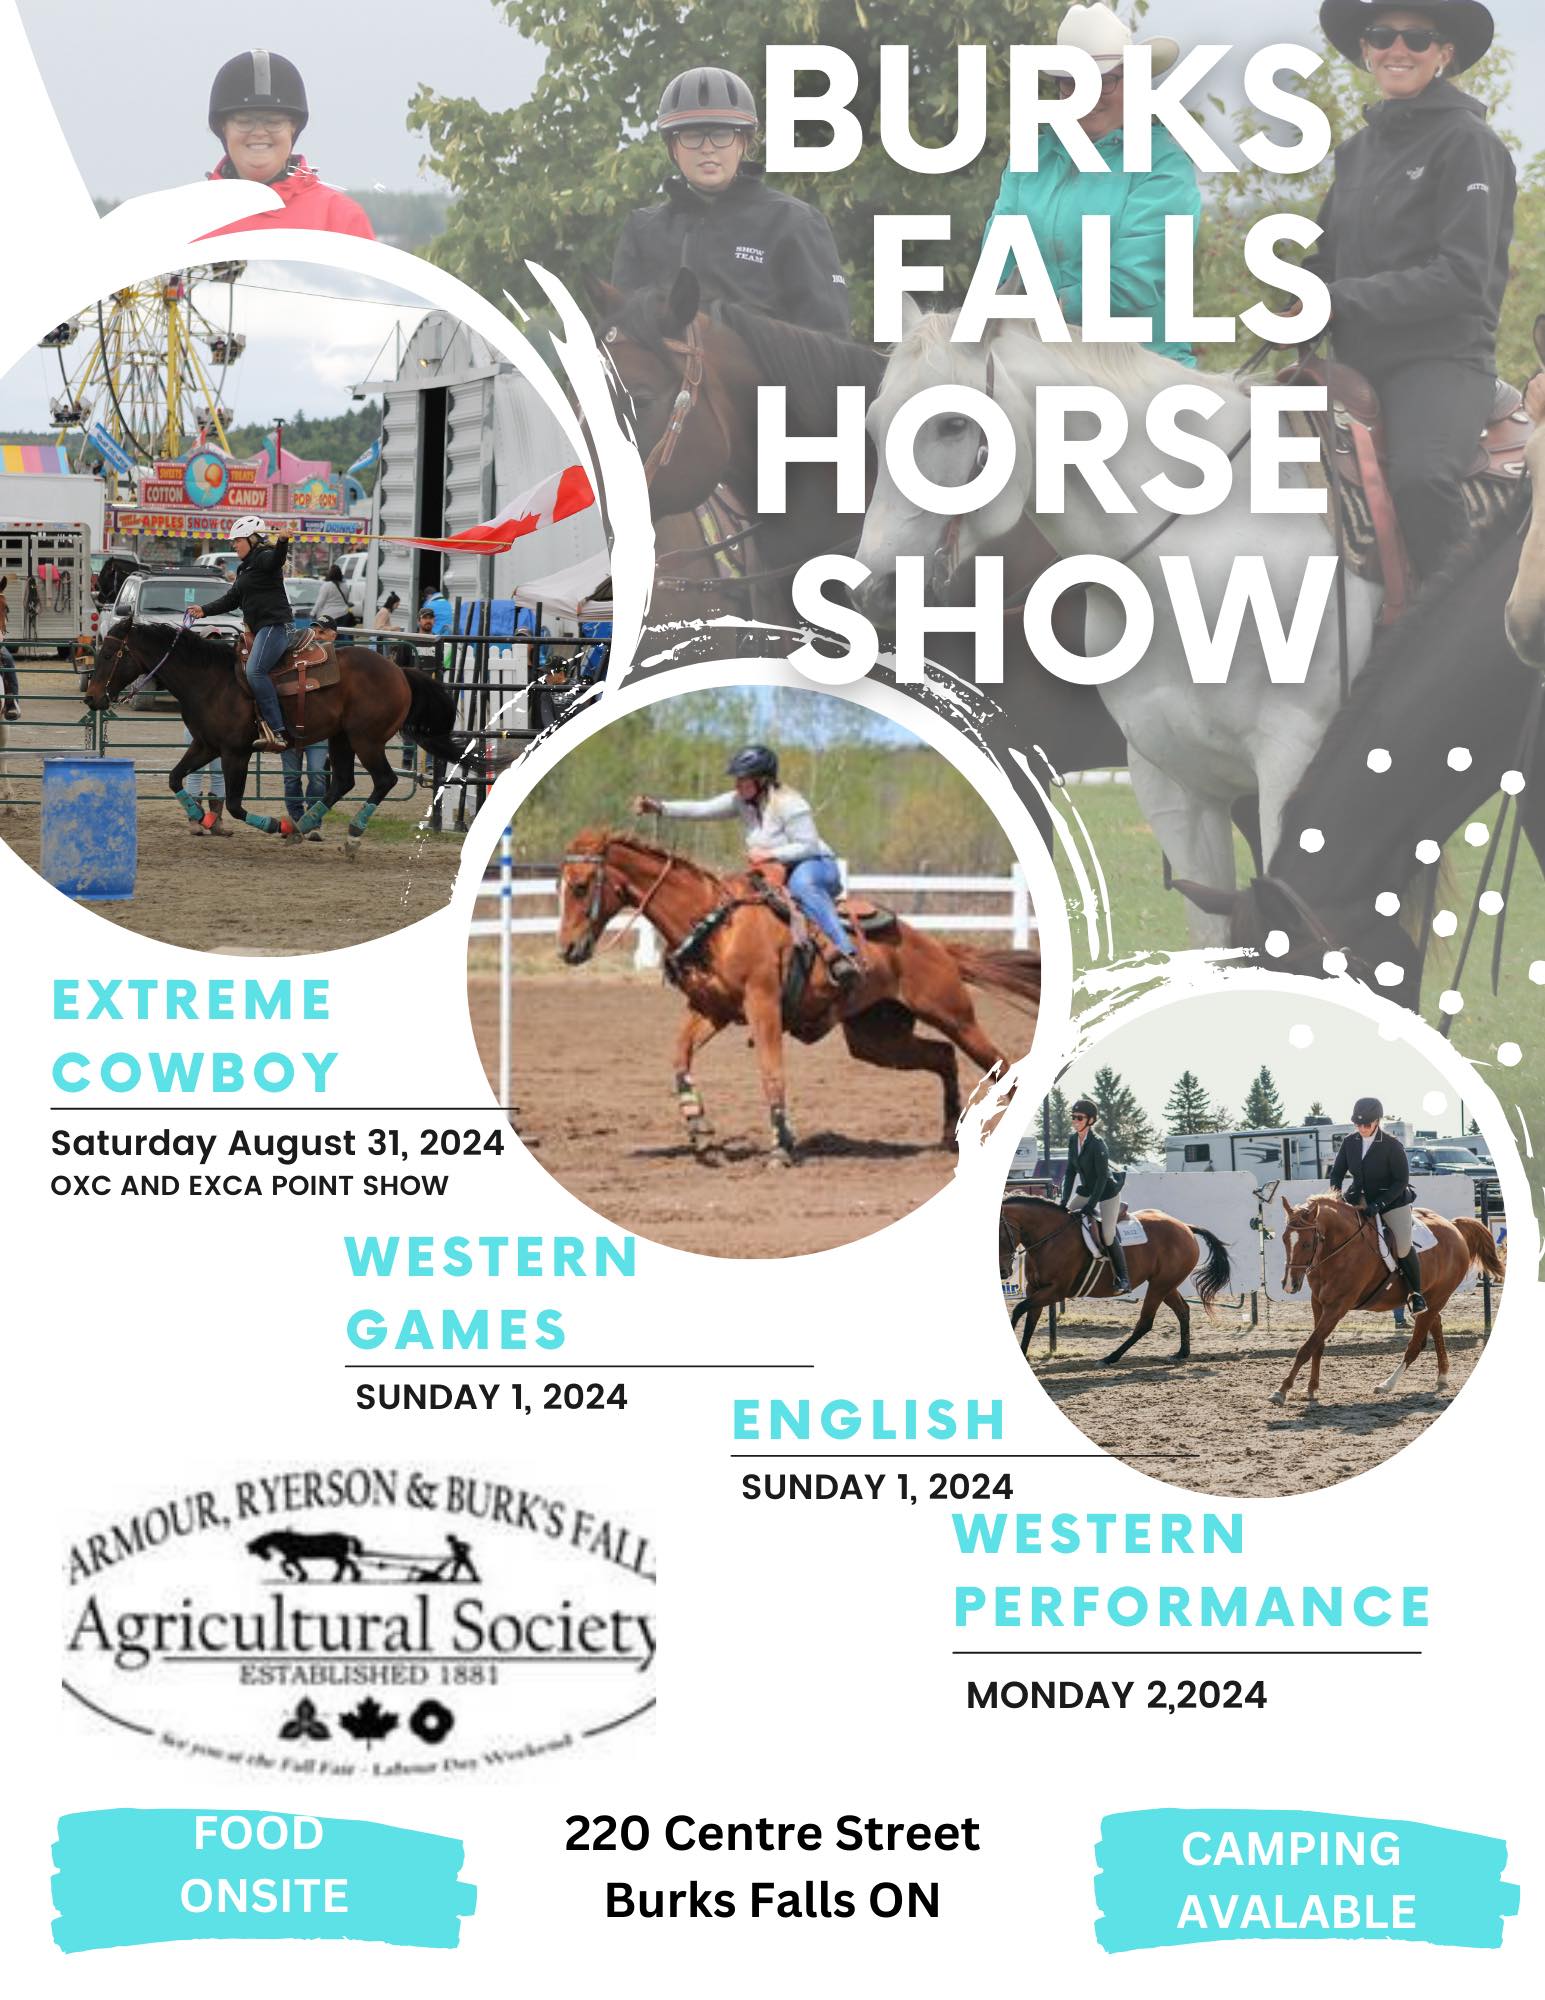 Burks Falls Horse Show